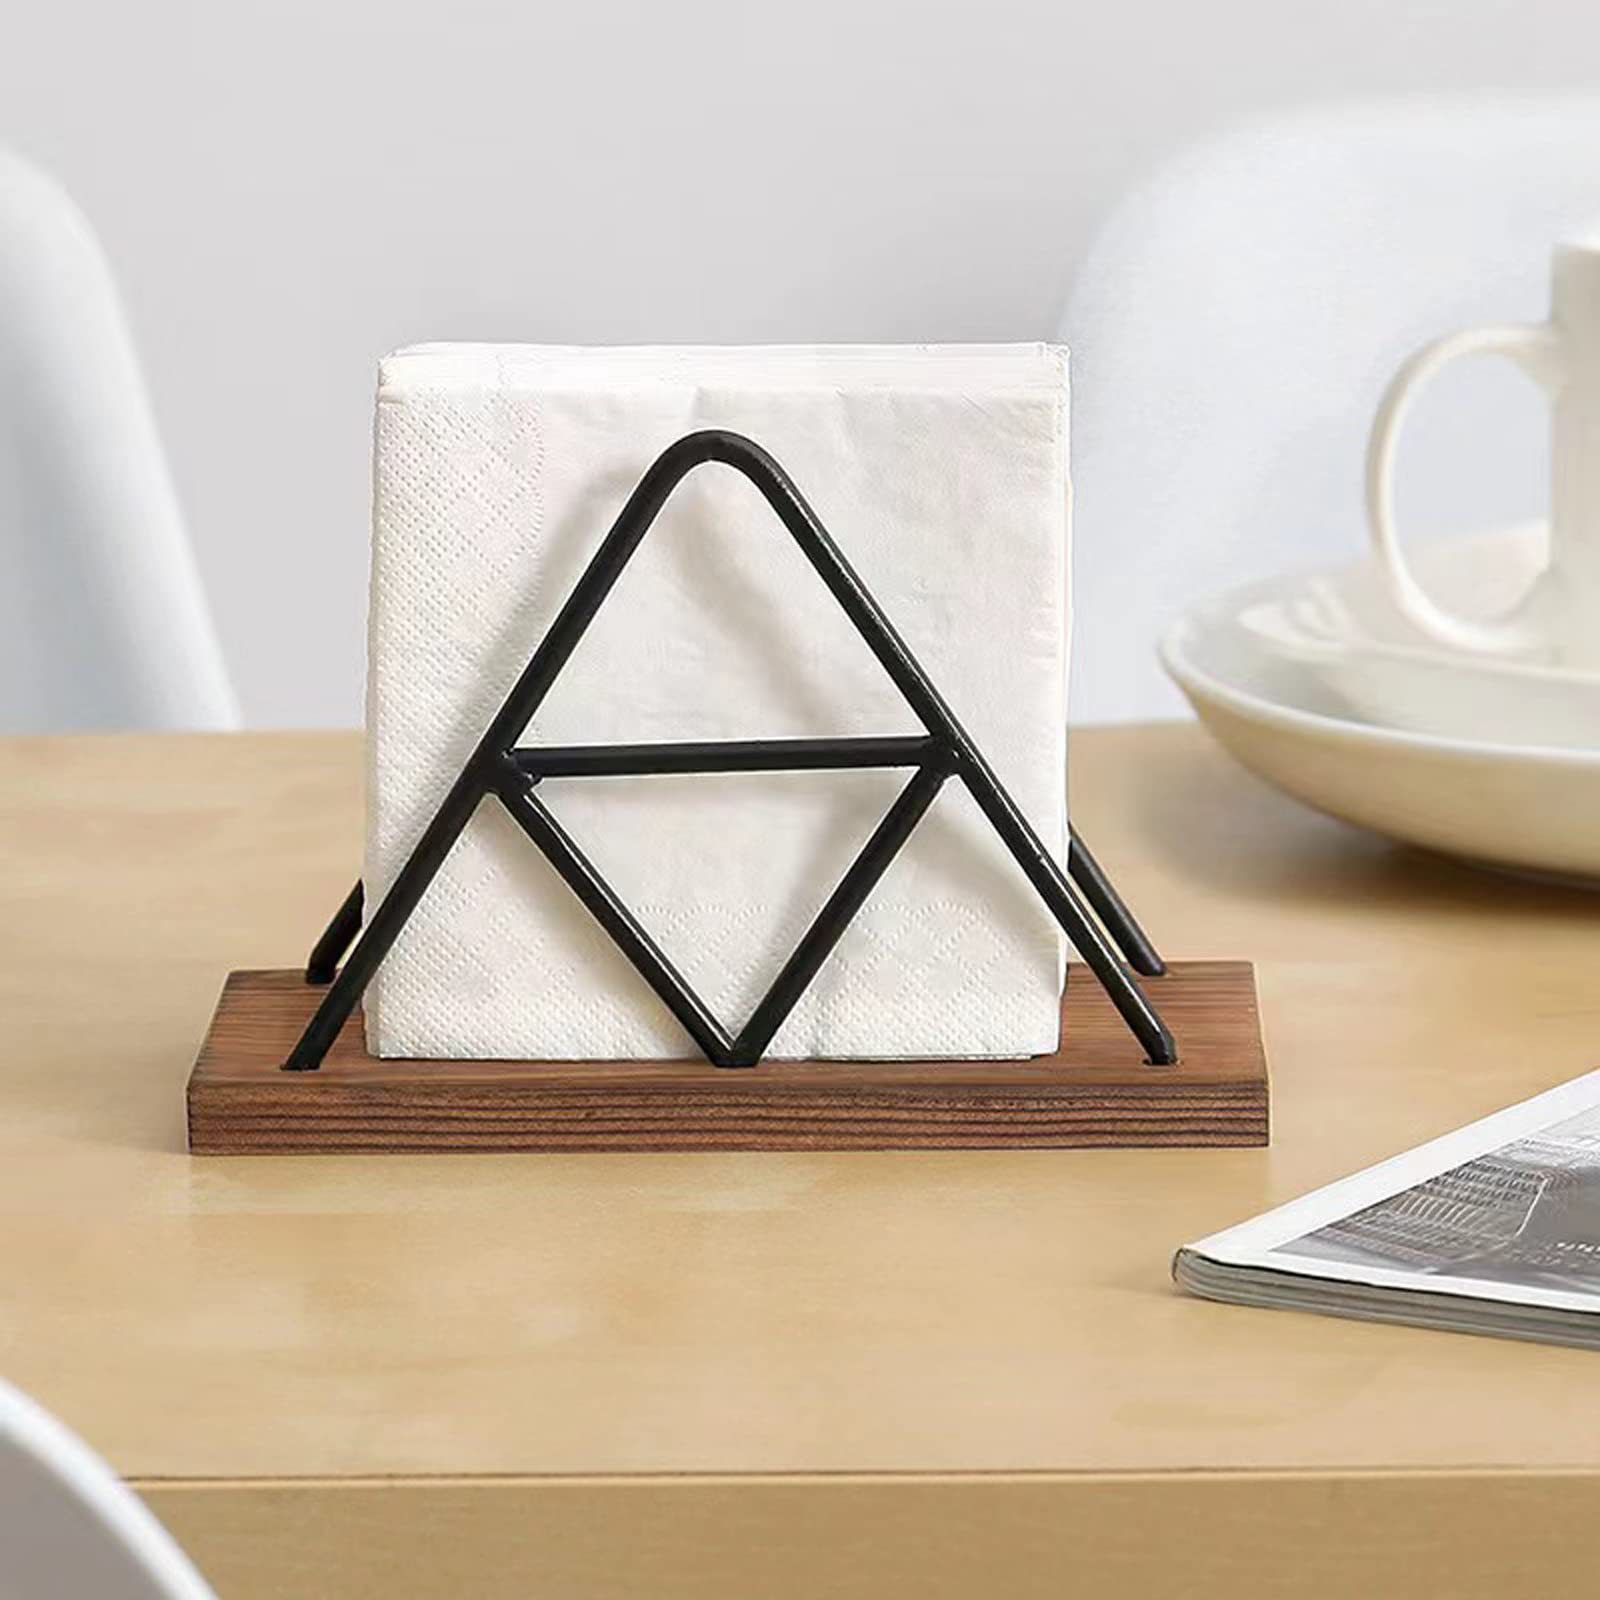 木质三角卫生纸收纳架创意款餐巾架铁木结合三角餐巾收纳架